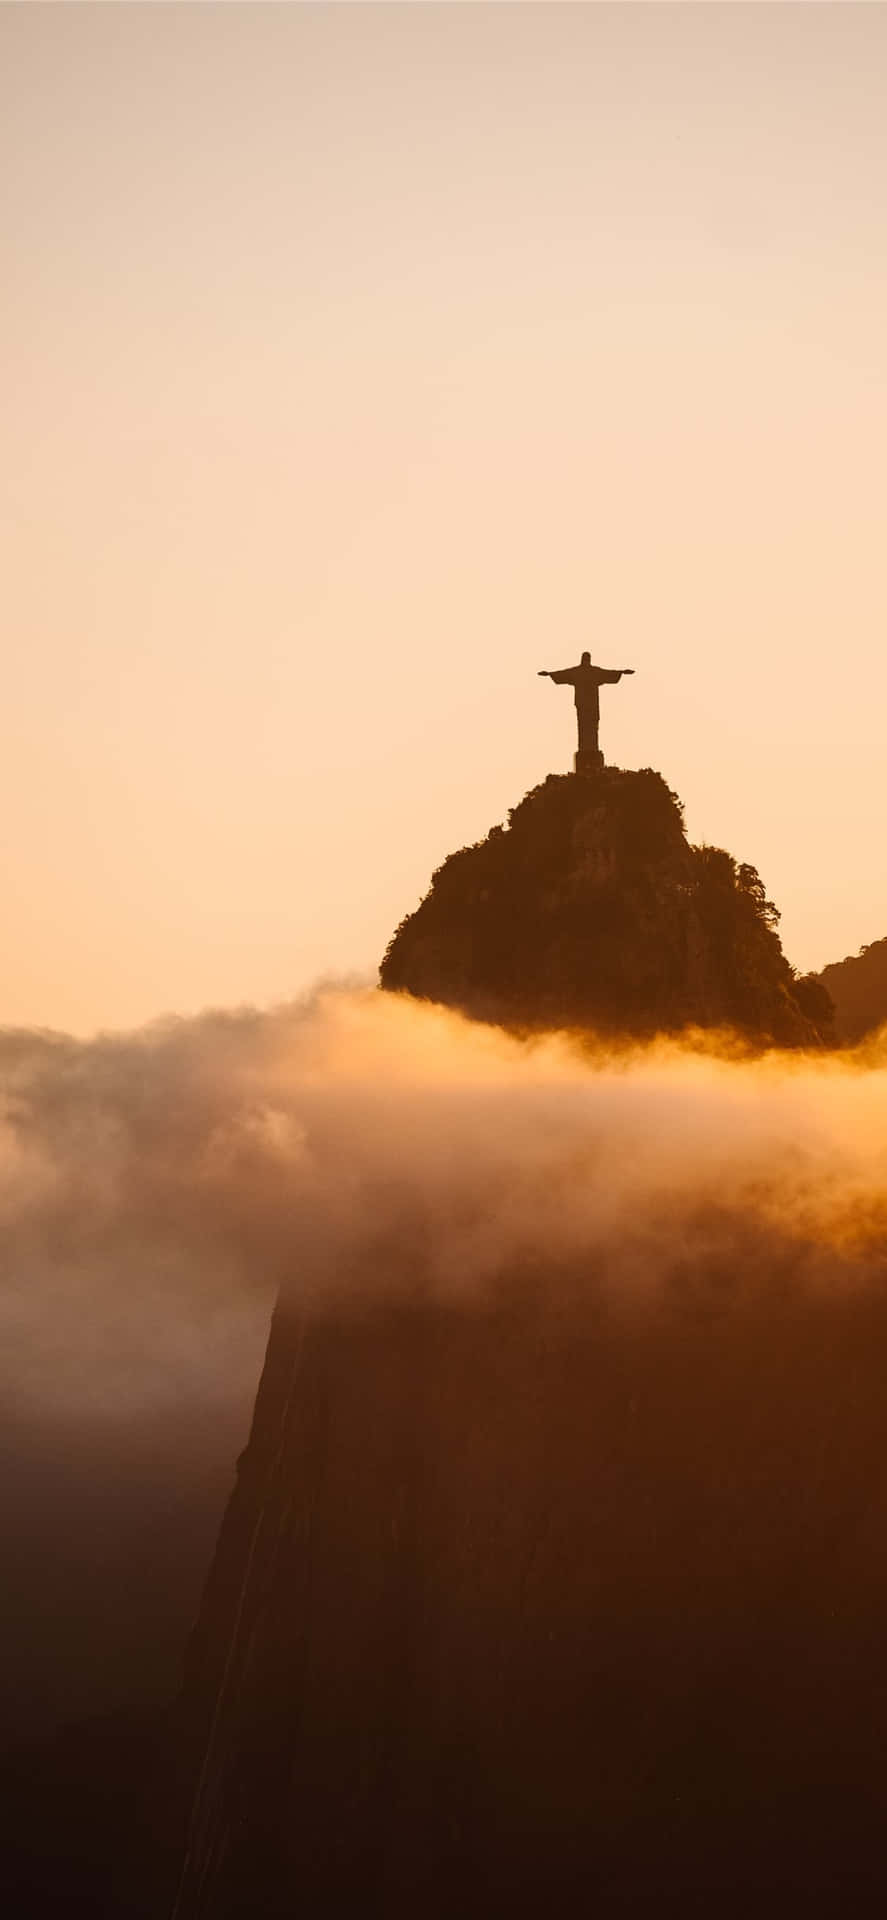 Christ The Redeemer Statue At Sunset In Rio De Janeiro, Brazil Wallpaper